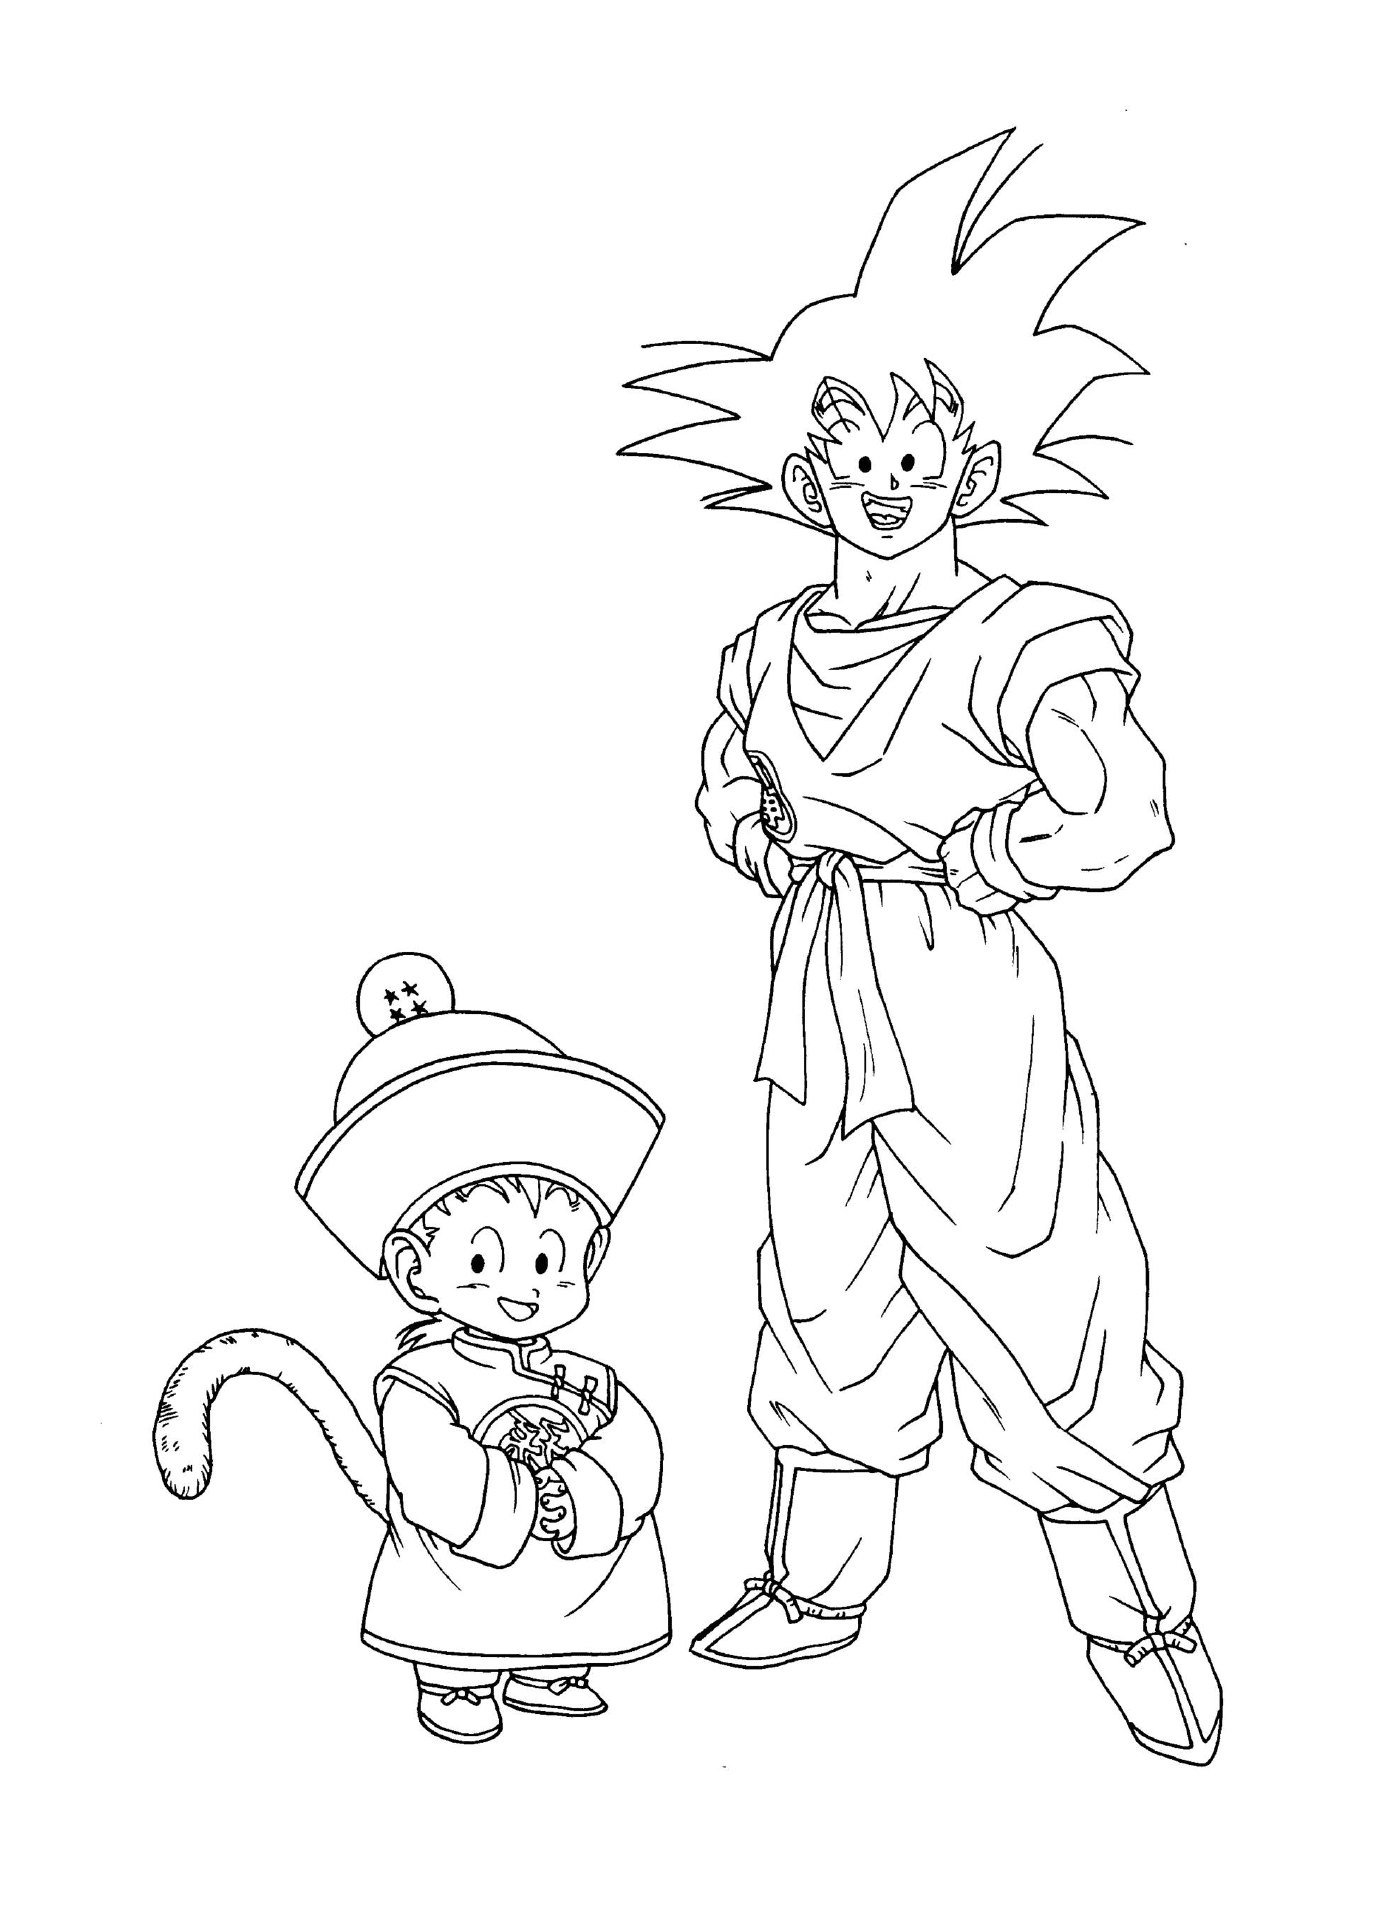   Personnages de Dragon Ball Z : Goku et Goten 